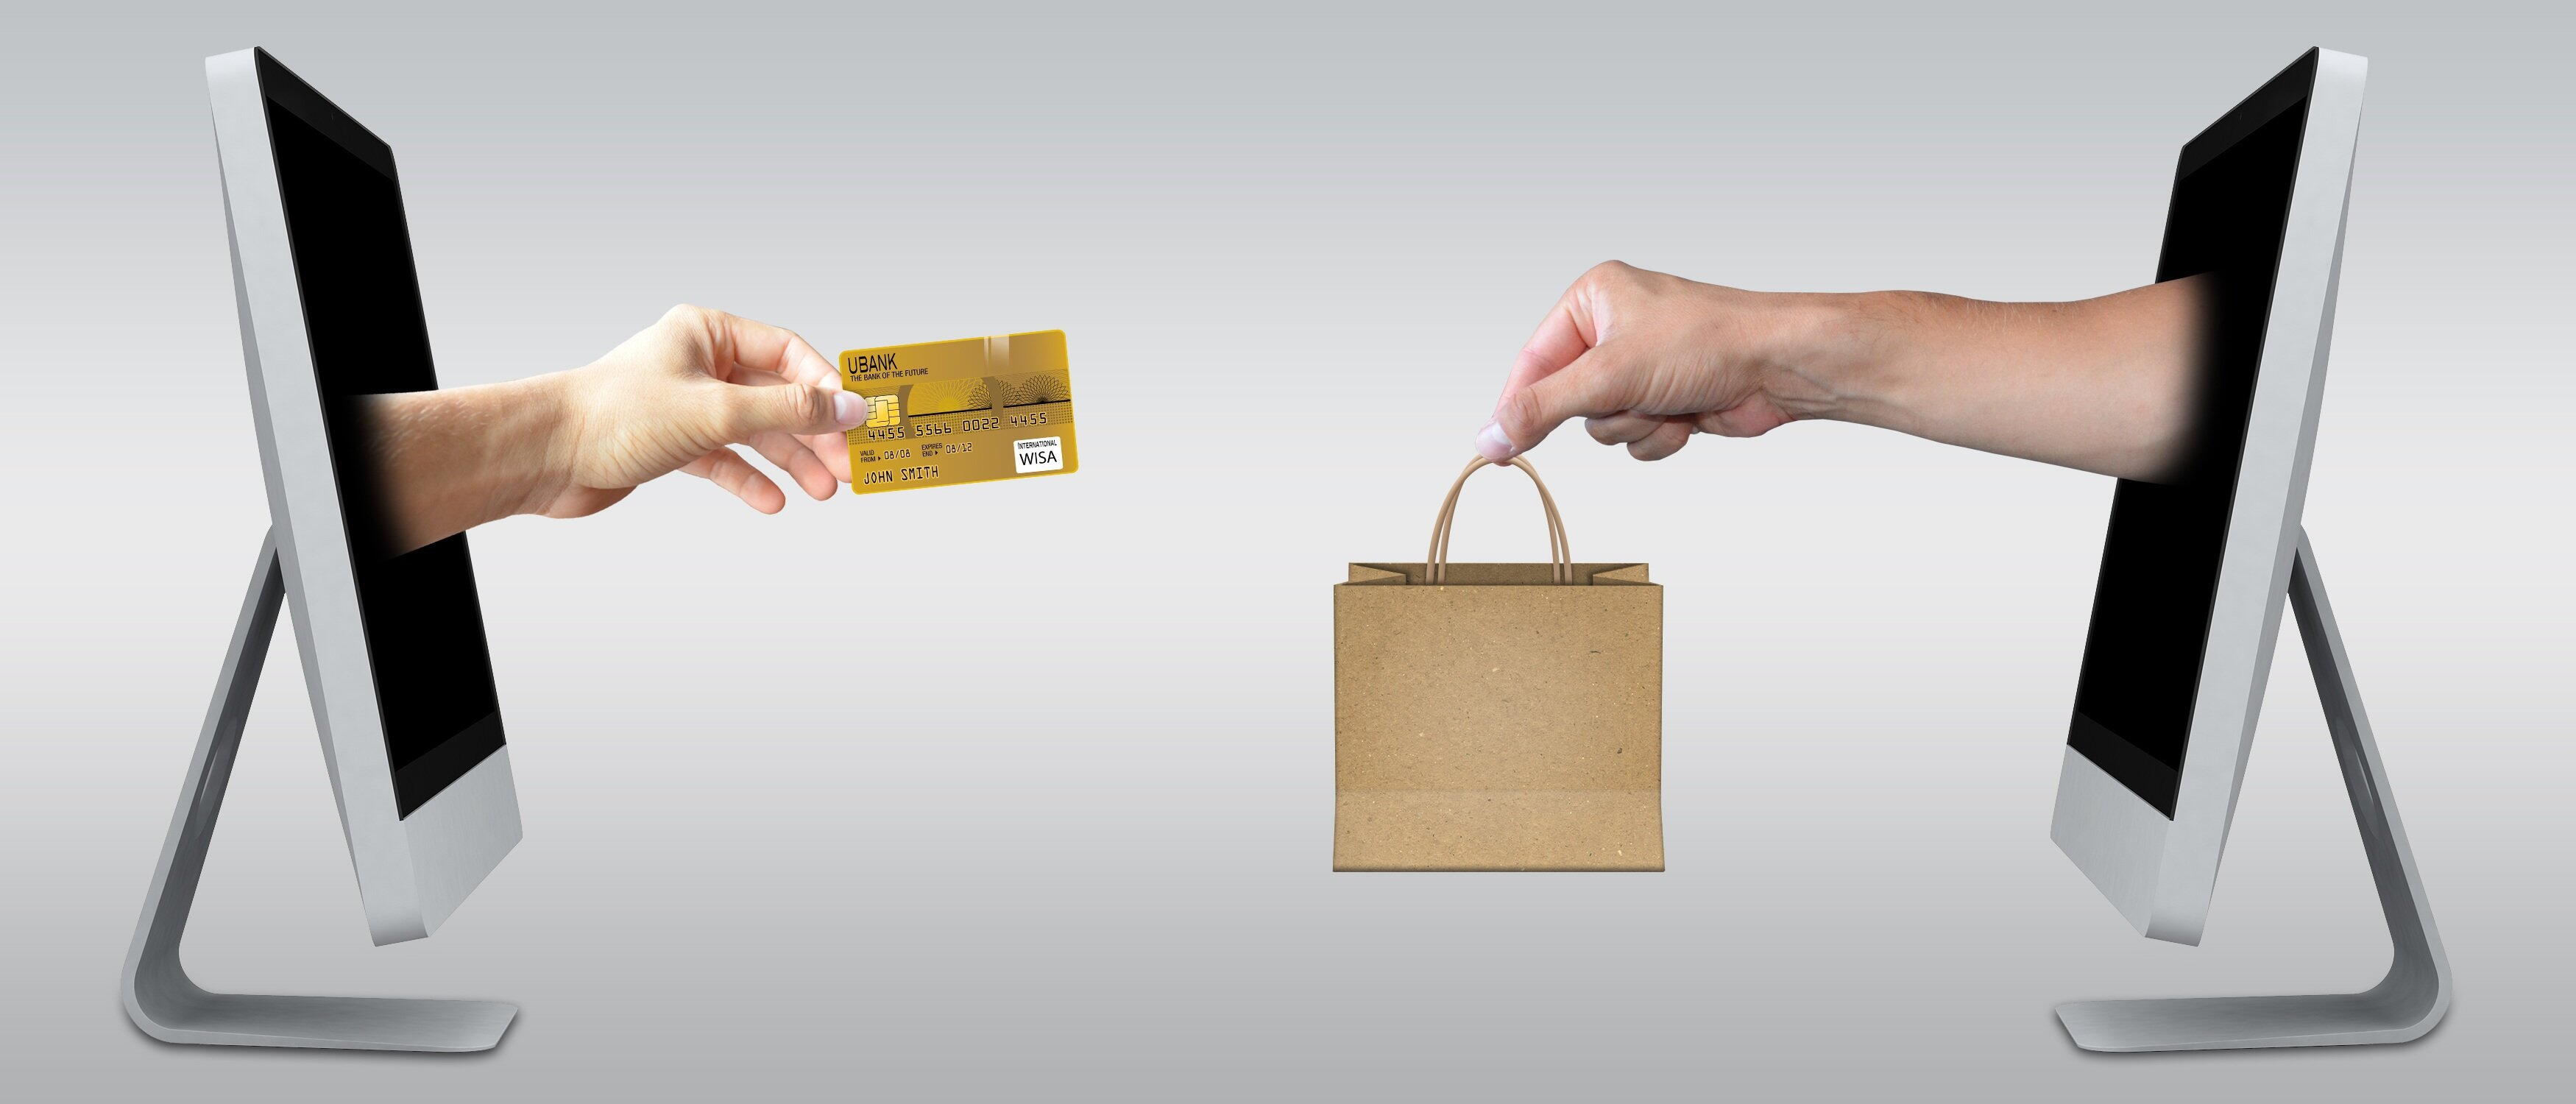 Uma mão saindo de um monitor à esquerda, entregando um cartão de crédito à outra mão, que segura uma sacola, à direita